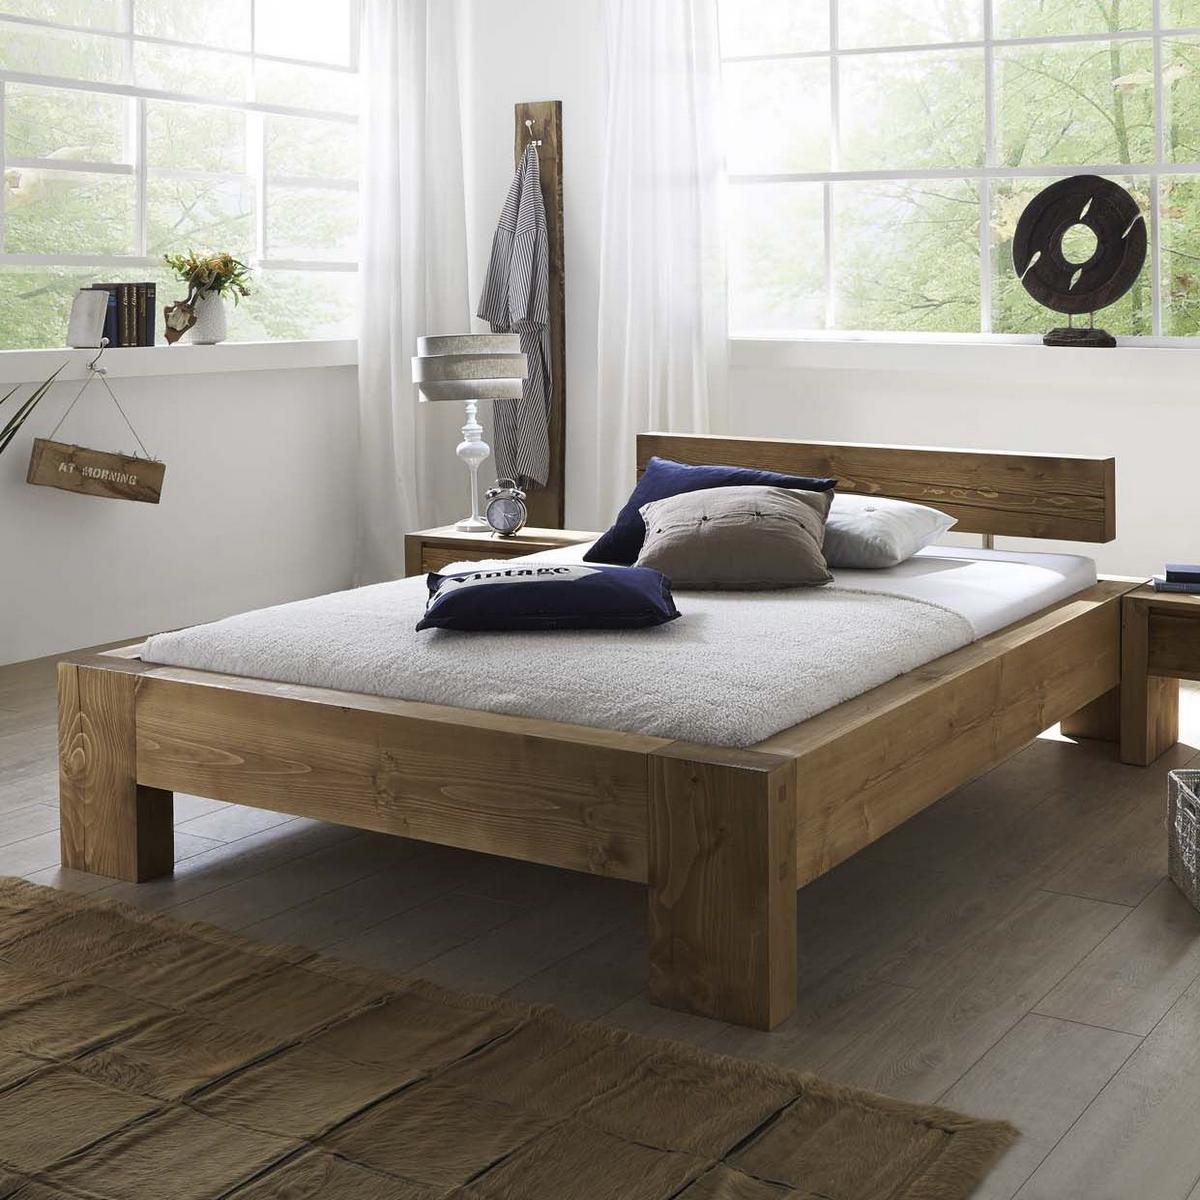 Кровать, выполненная из деревянного бруса, станет отличным вариантом для детской комнаты